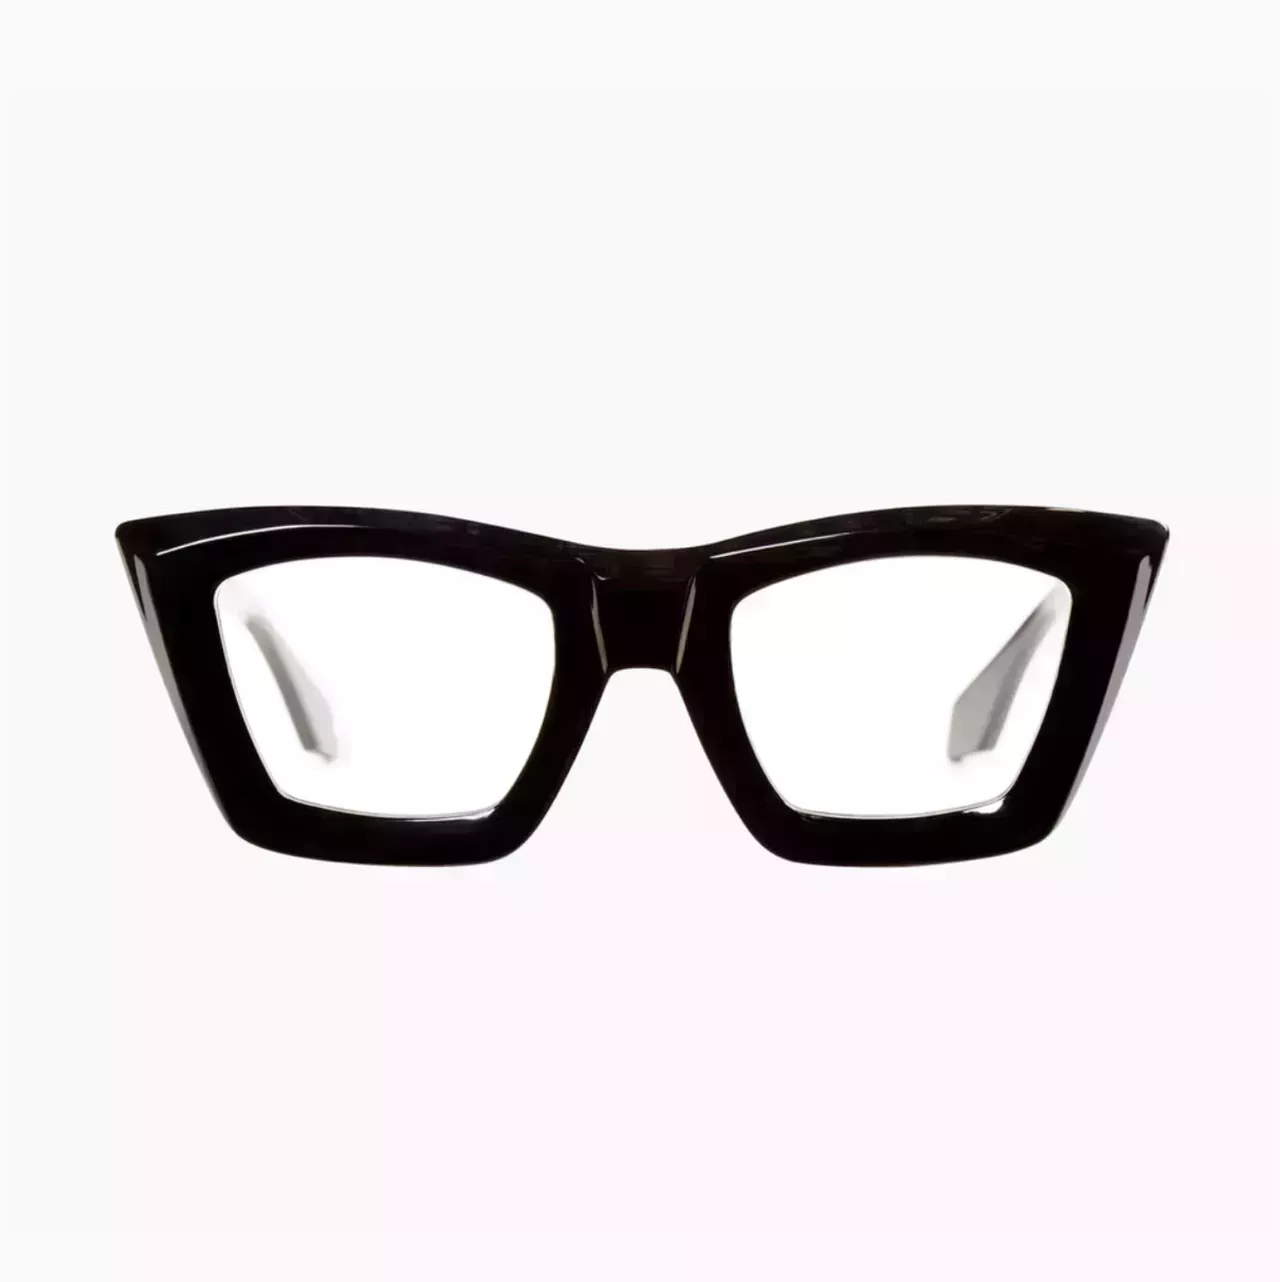 Utenzi Miller Soho glossy black pointed glasses on white background